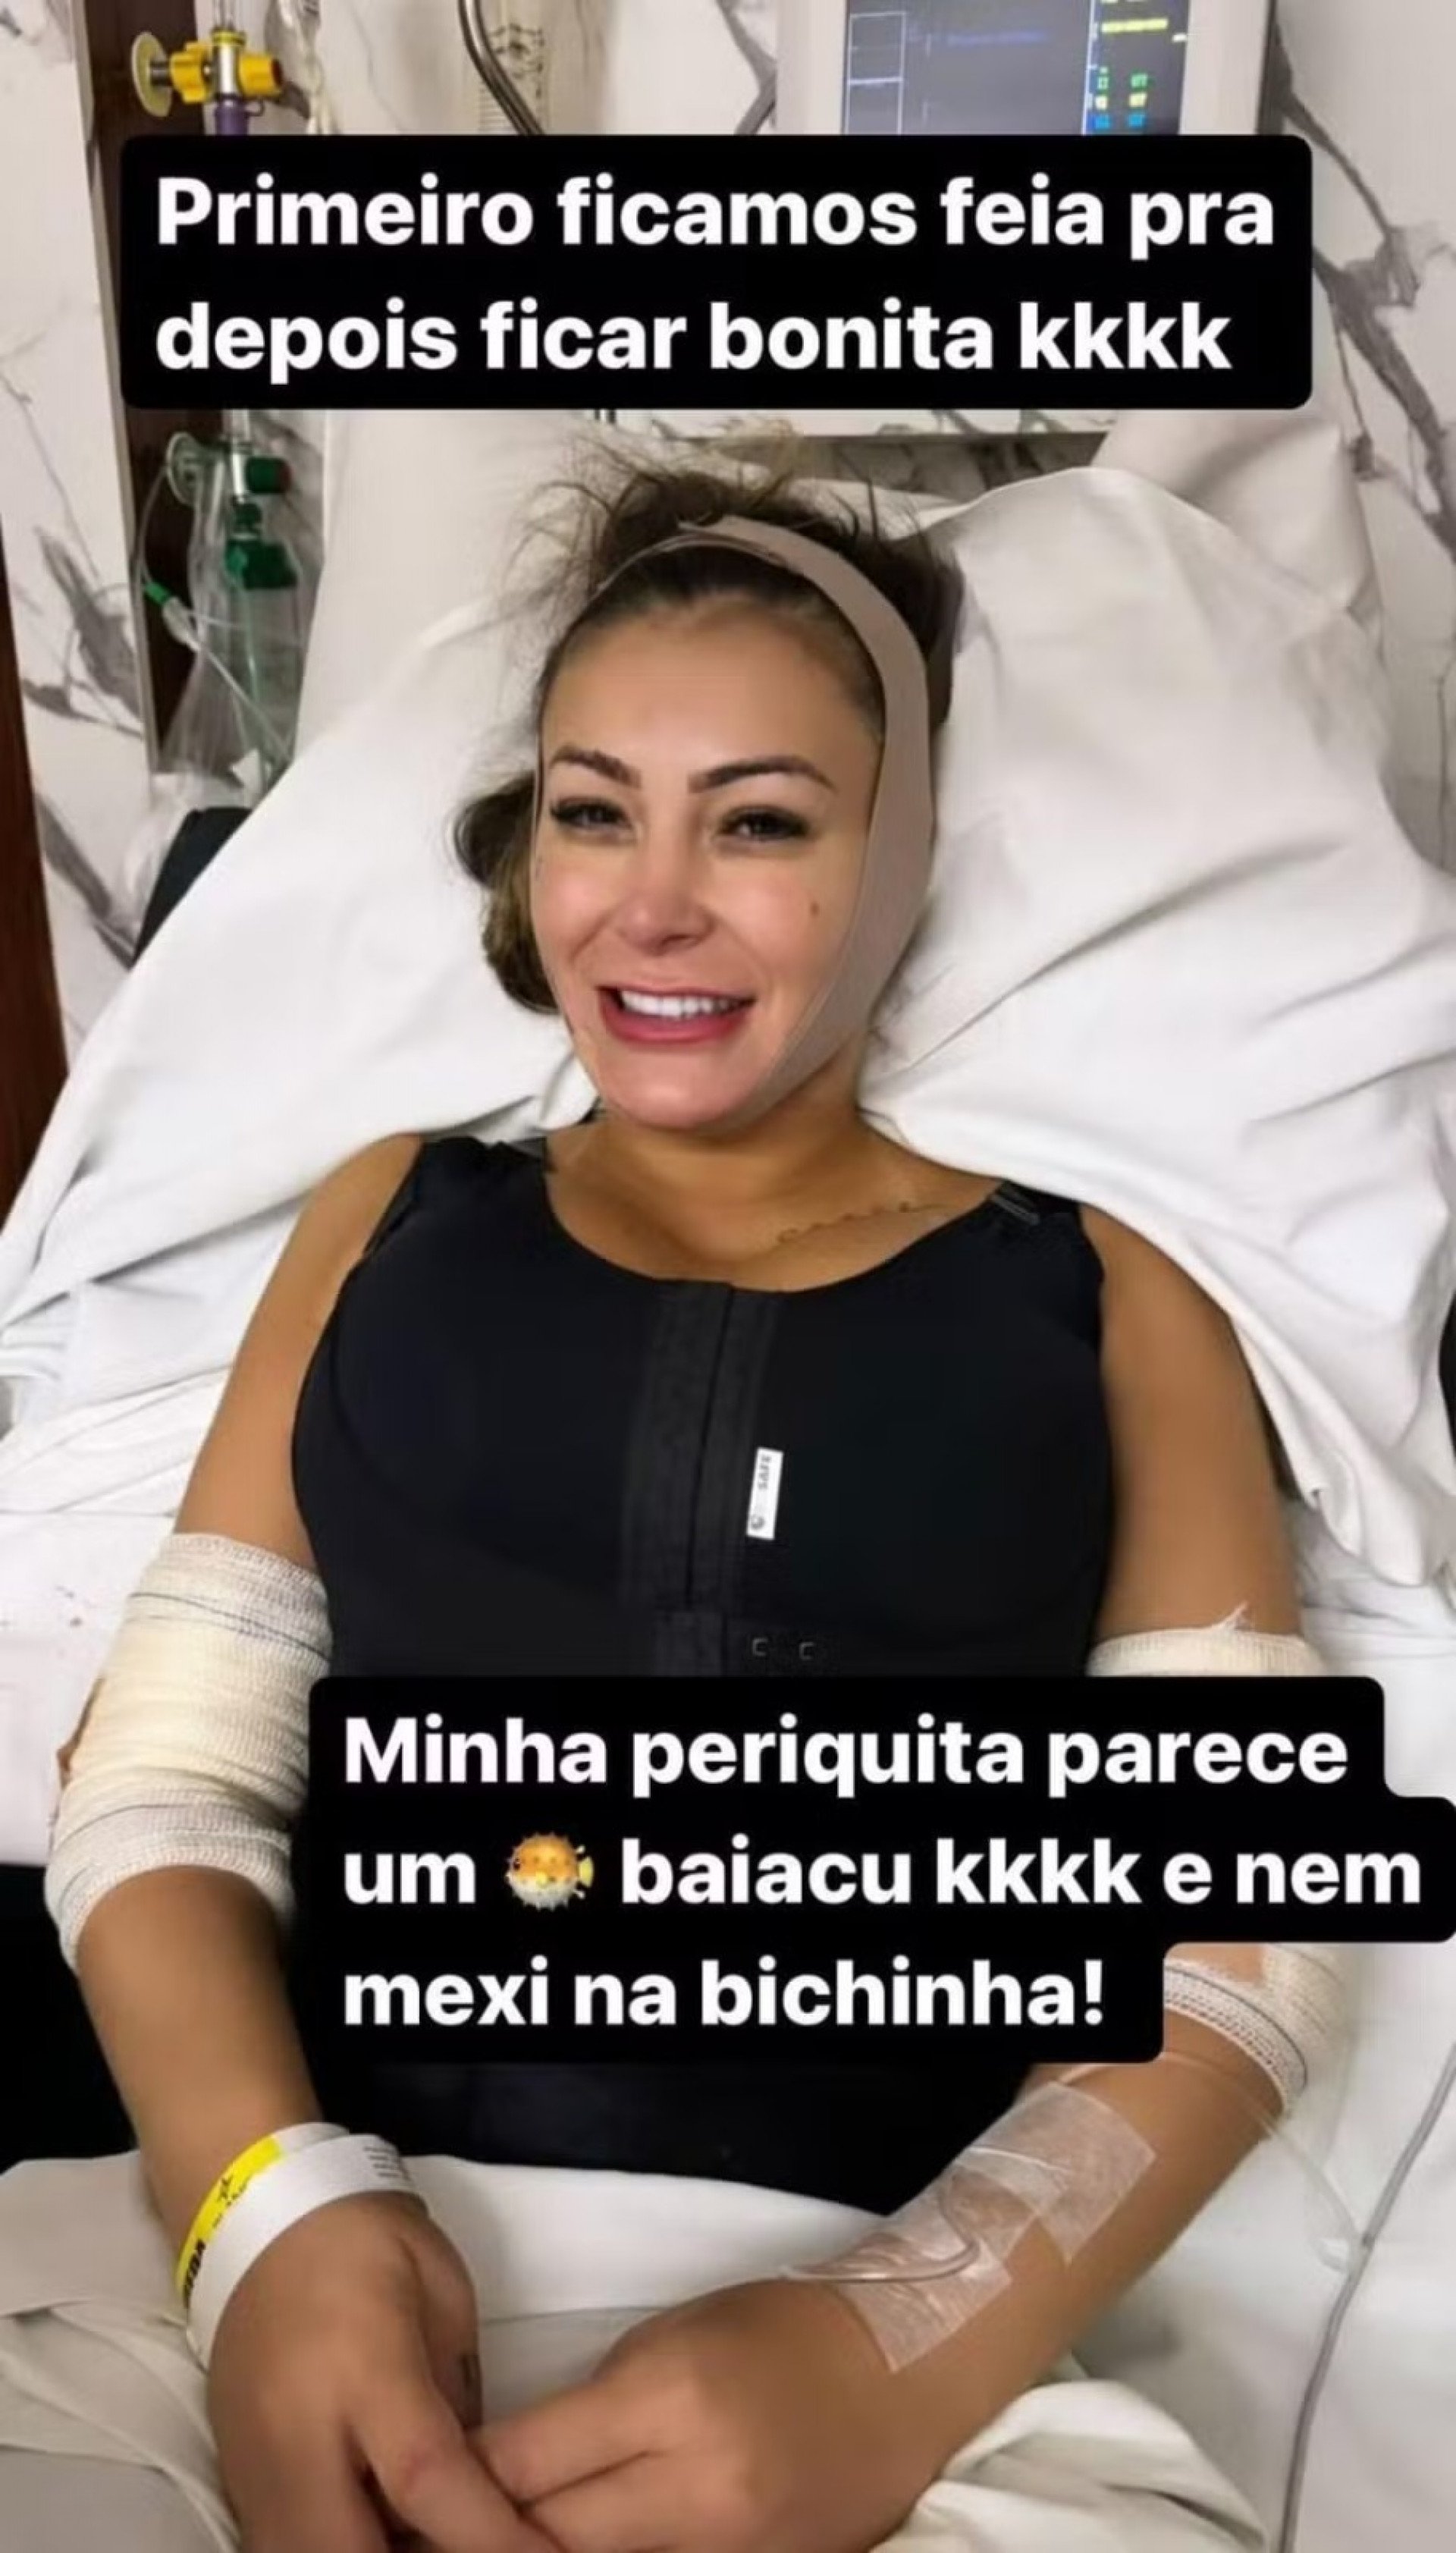 Andressa Urach no hospital após cirurgias  - Reprodução/Instagram